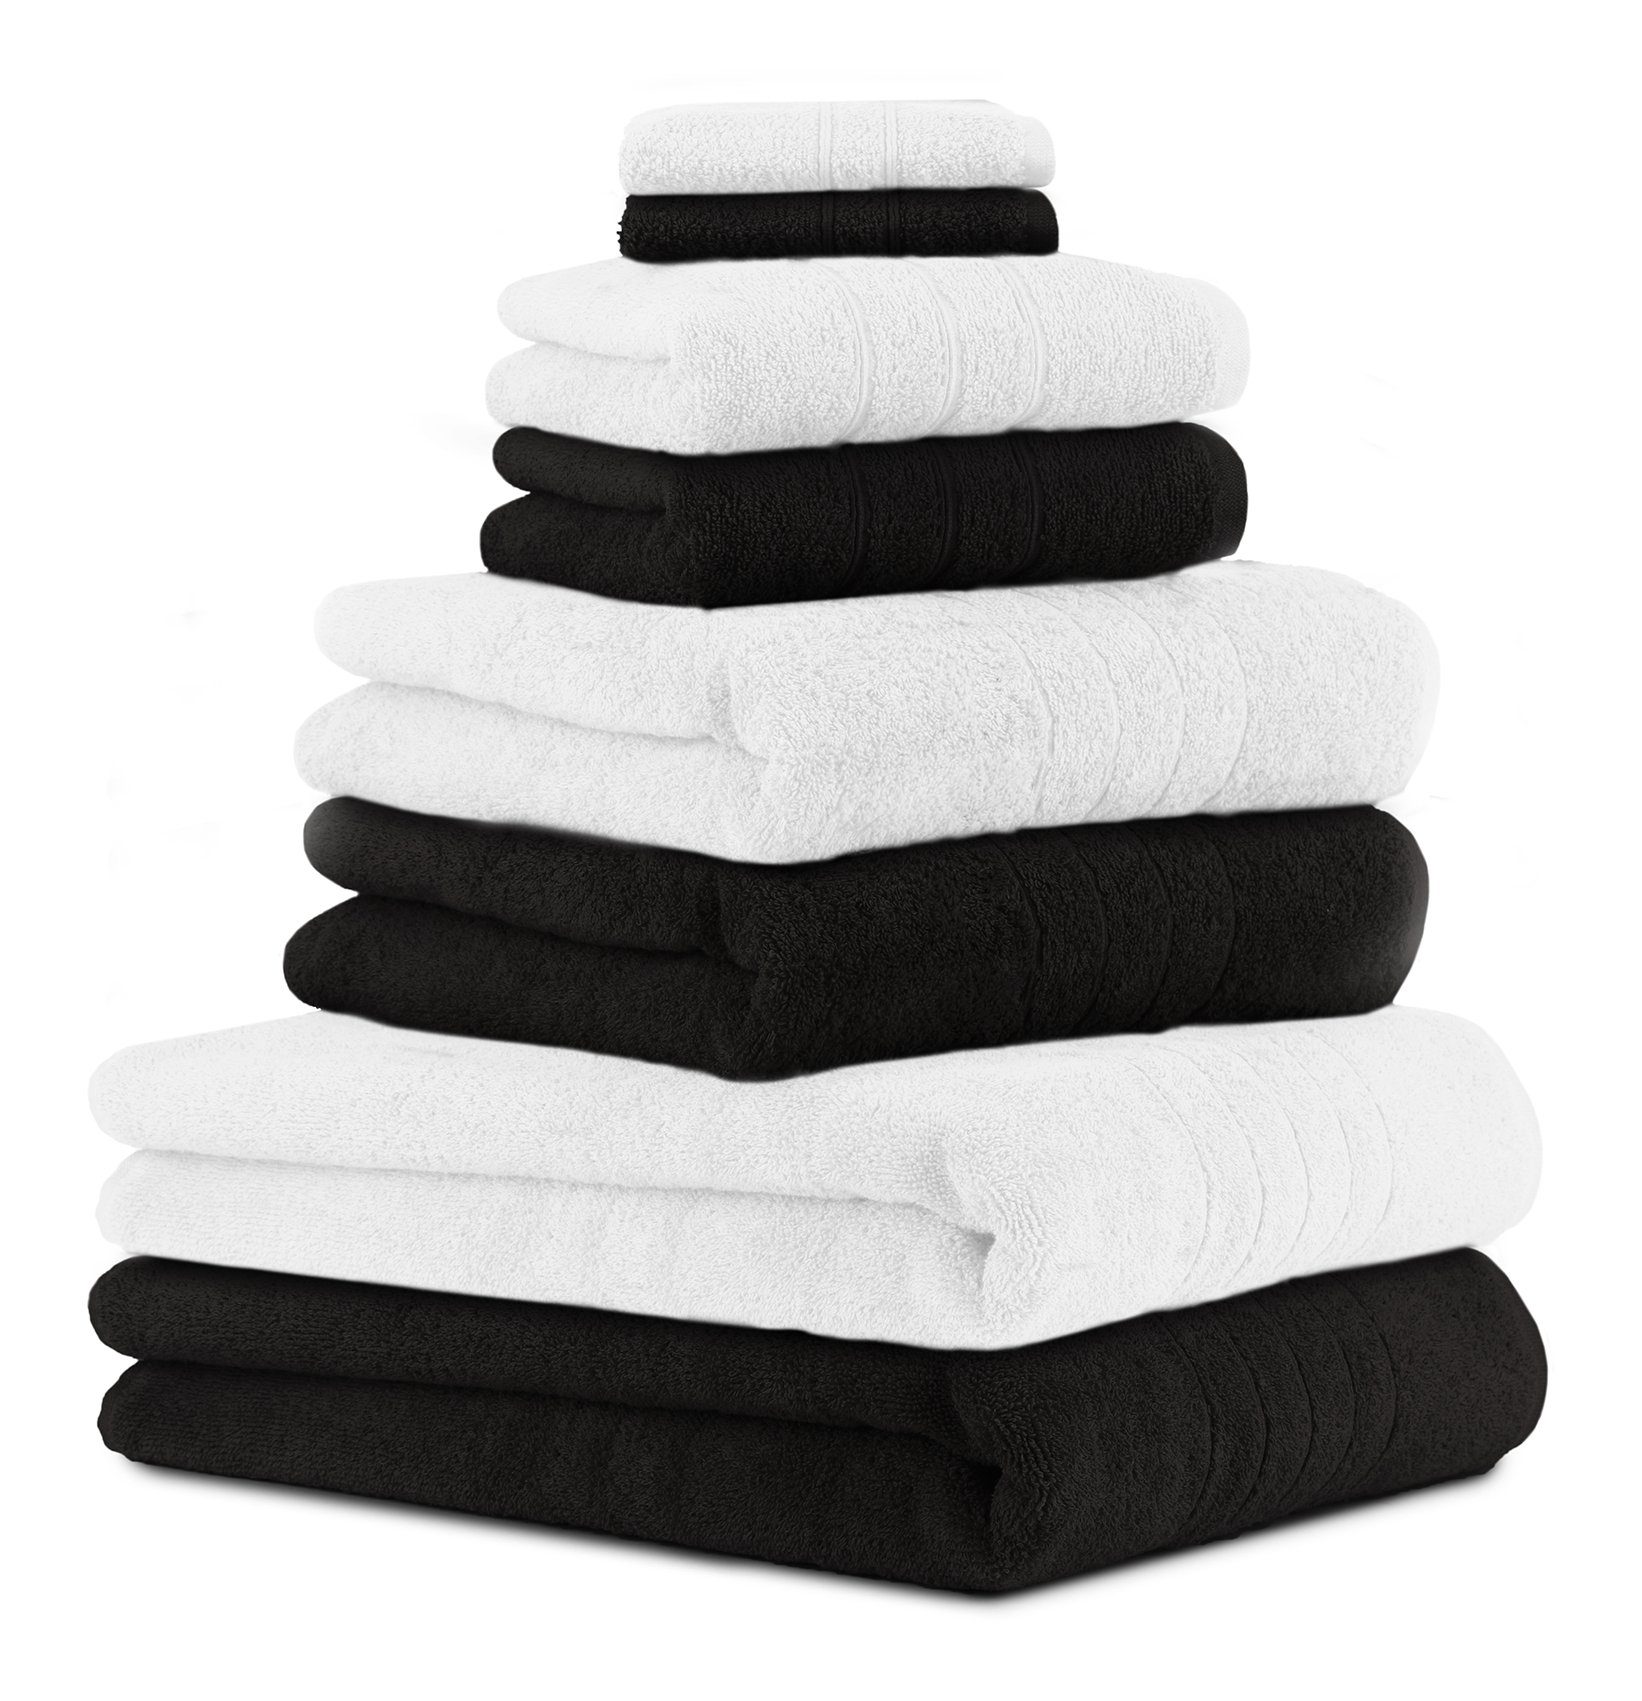 Betz Handtuch Set 8-TLG. Handtuch-Set Deluxe 100% Baumwolle 2 Badetücher 2 Duschtücher 2 Handtücher 2 Seiftücher Farbe weiß und schwarz, 100% Baumwolle, (8-tlg)